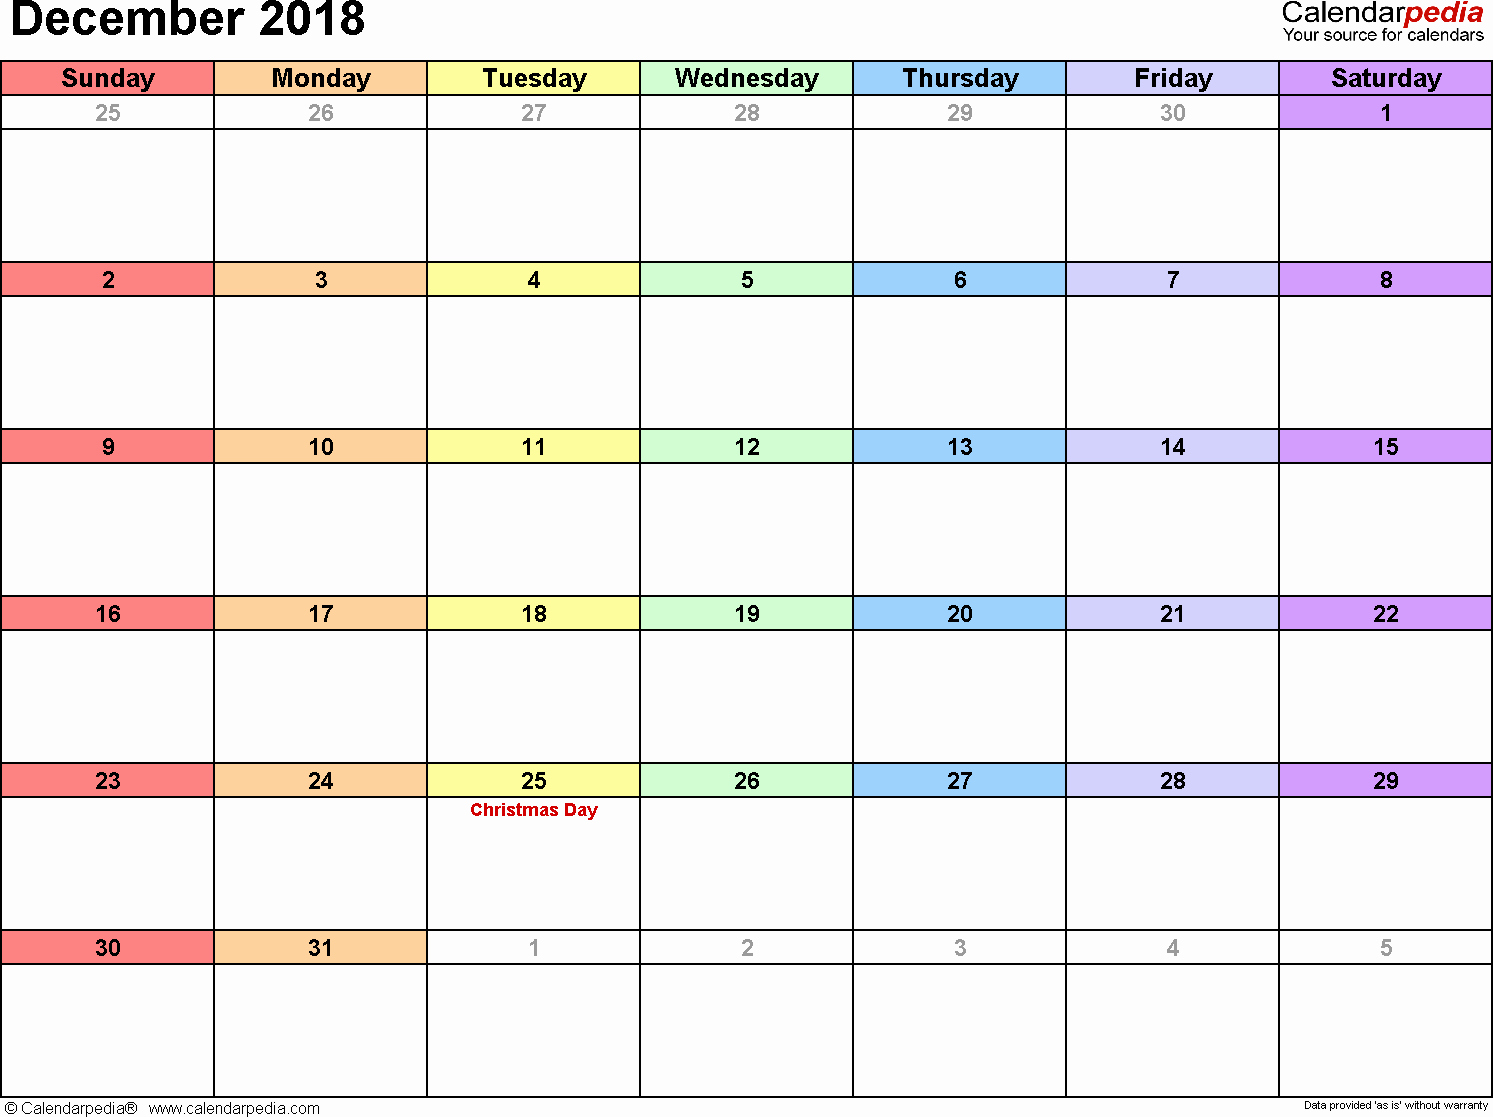 Blank Calendar Template December 2018 Best Of December 2018 Calendar Template